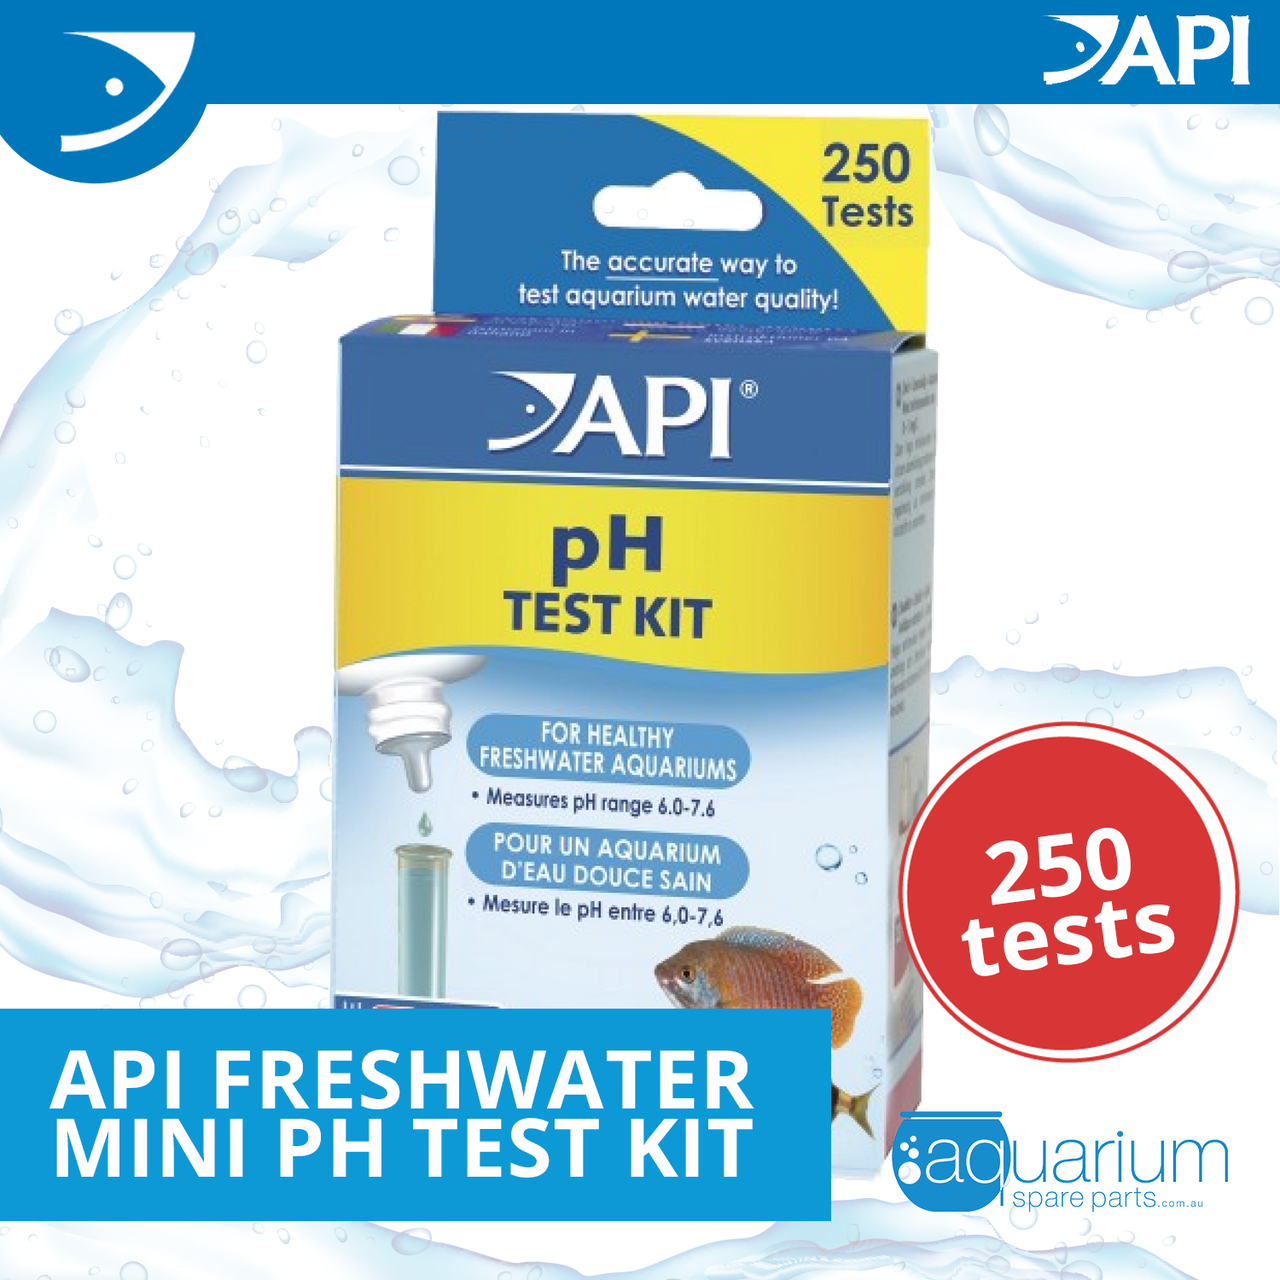 API PH TEST KIT 250-Test Freshwater Aquarium Water pH Test Kit, 4 Piece Set